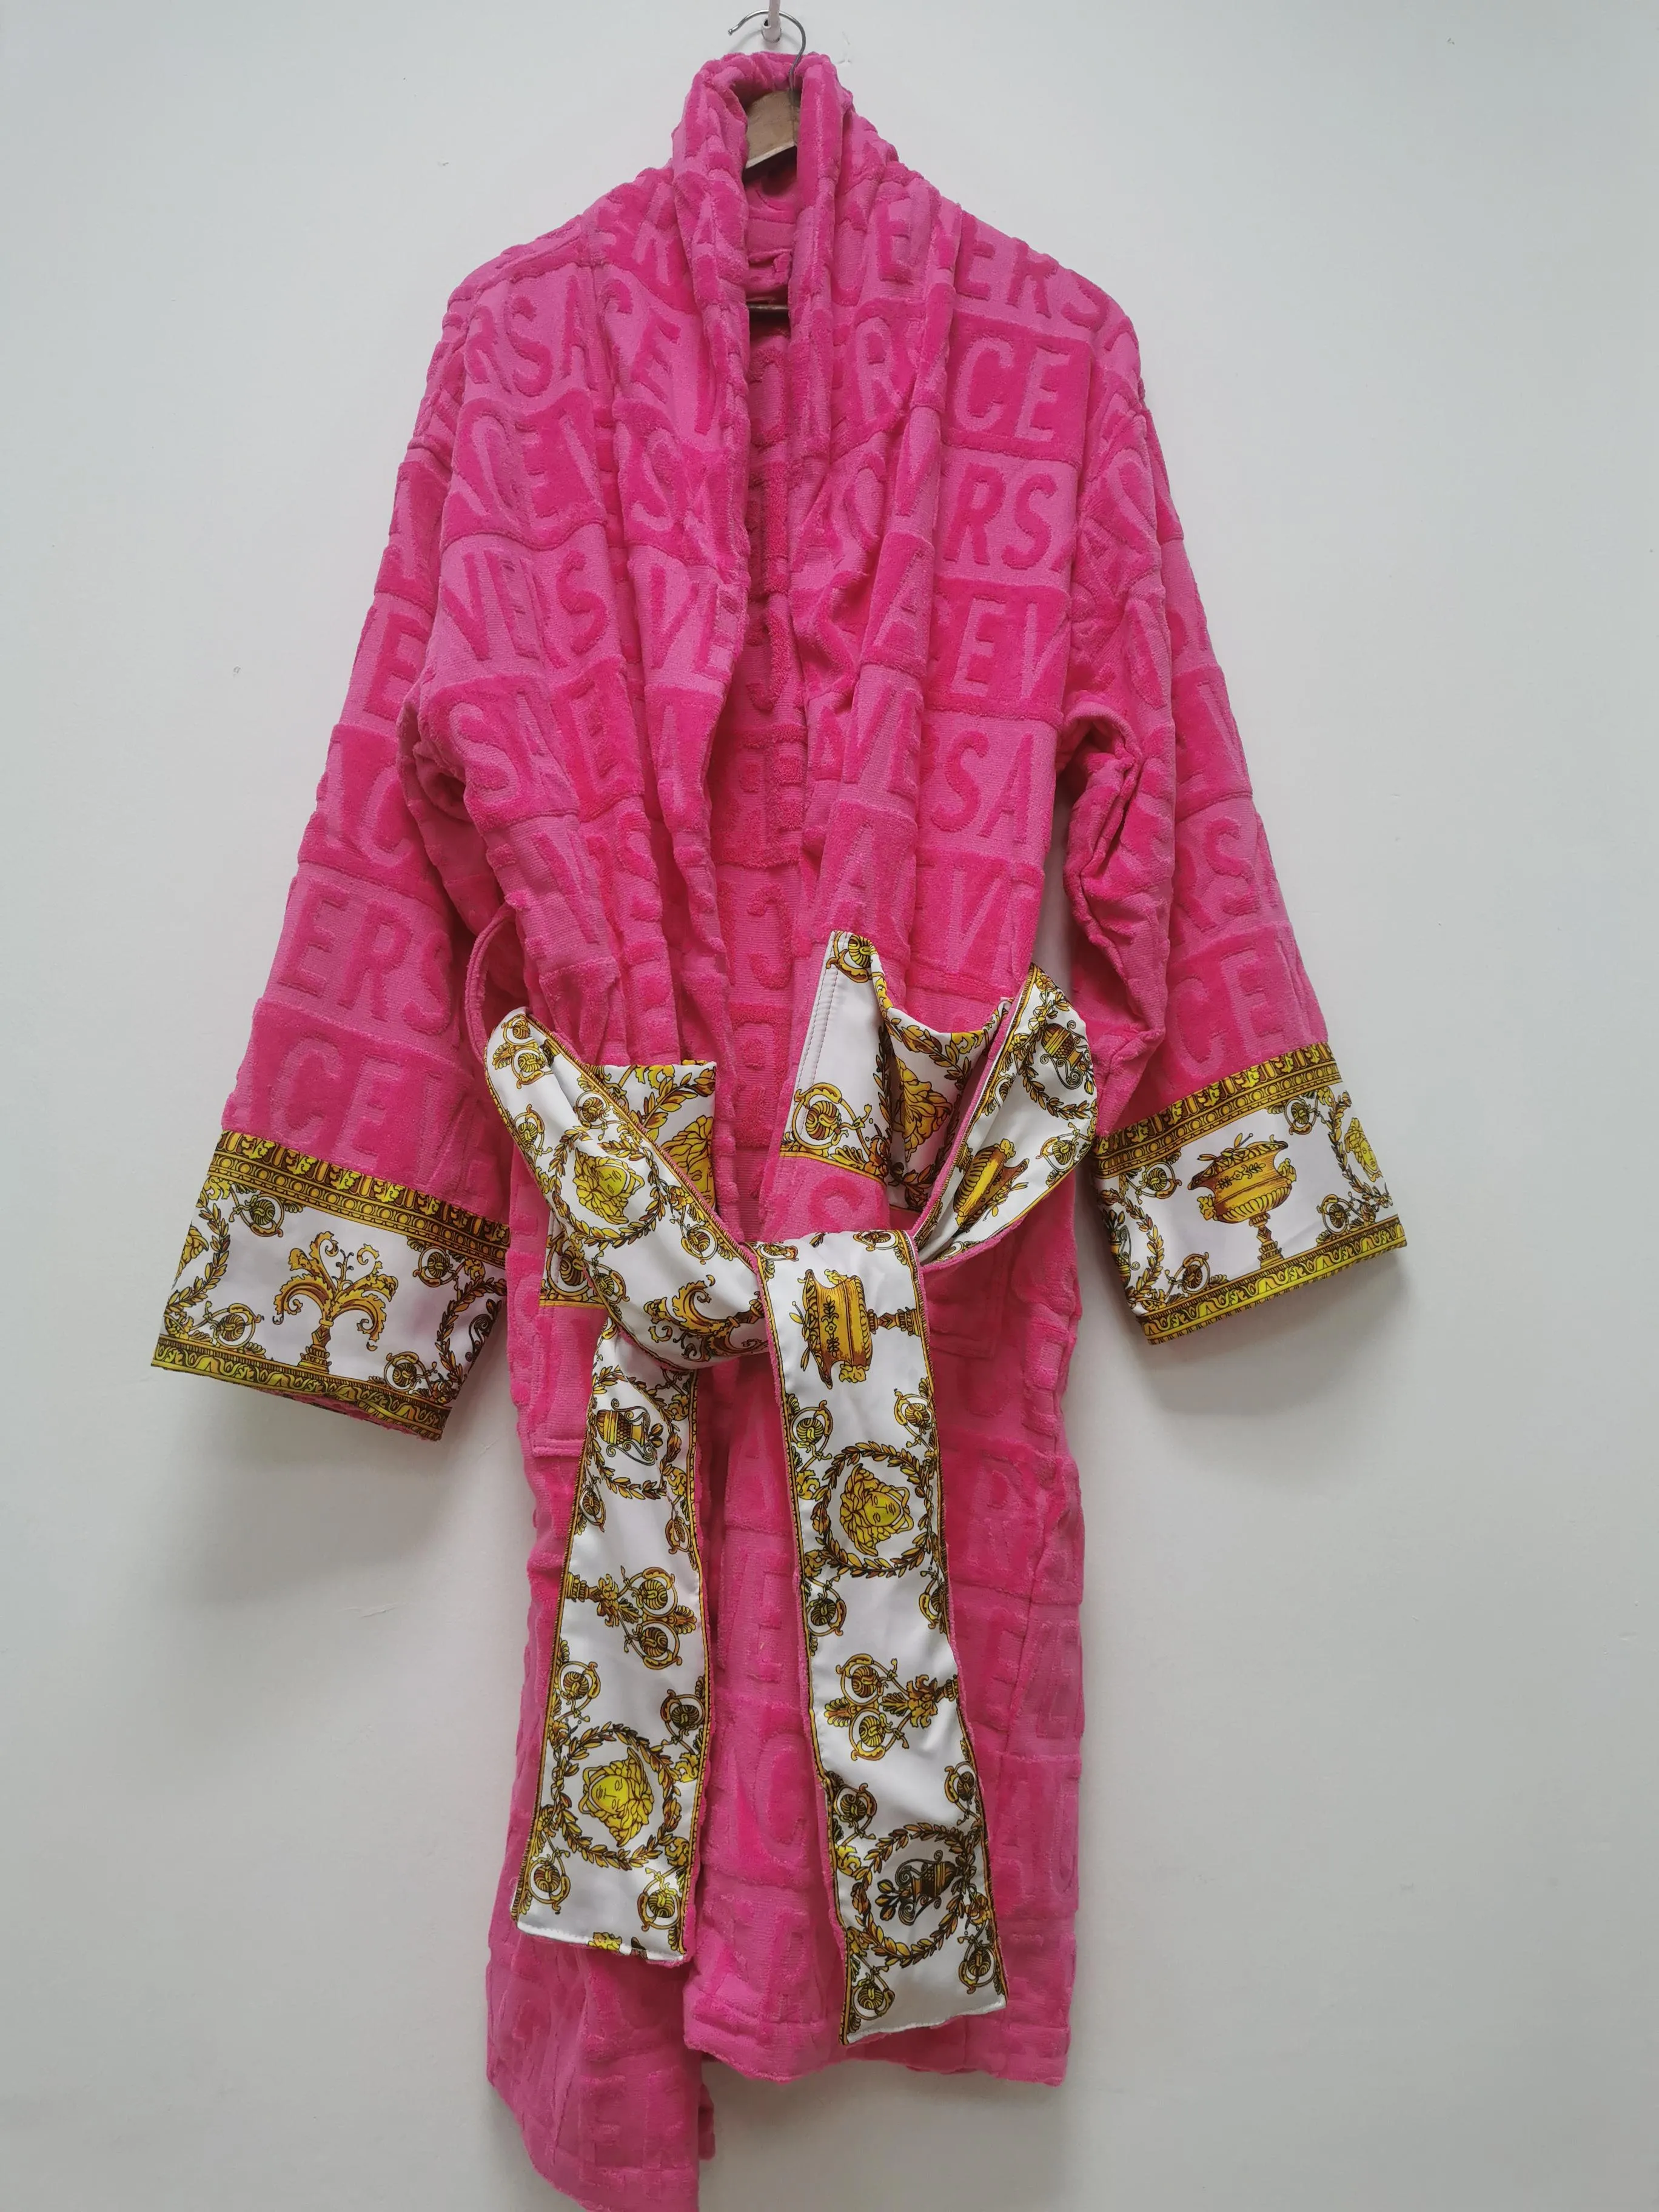 Yüksek Kaliteli Gecelik Kış Sıcak Unisex Pijama Pamuklu Erkek Kadın Bornoz Pijama Uzun Robe Tasarımcı Mektup Baskı Çiftler Sleeprobe m